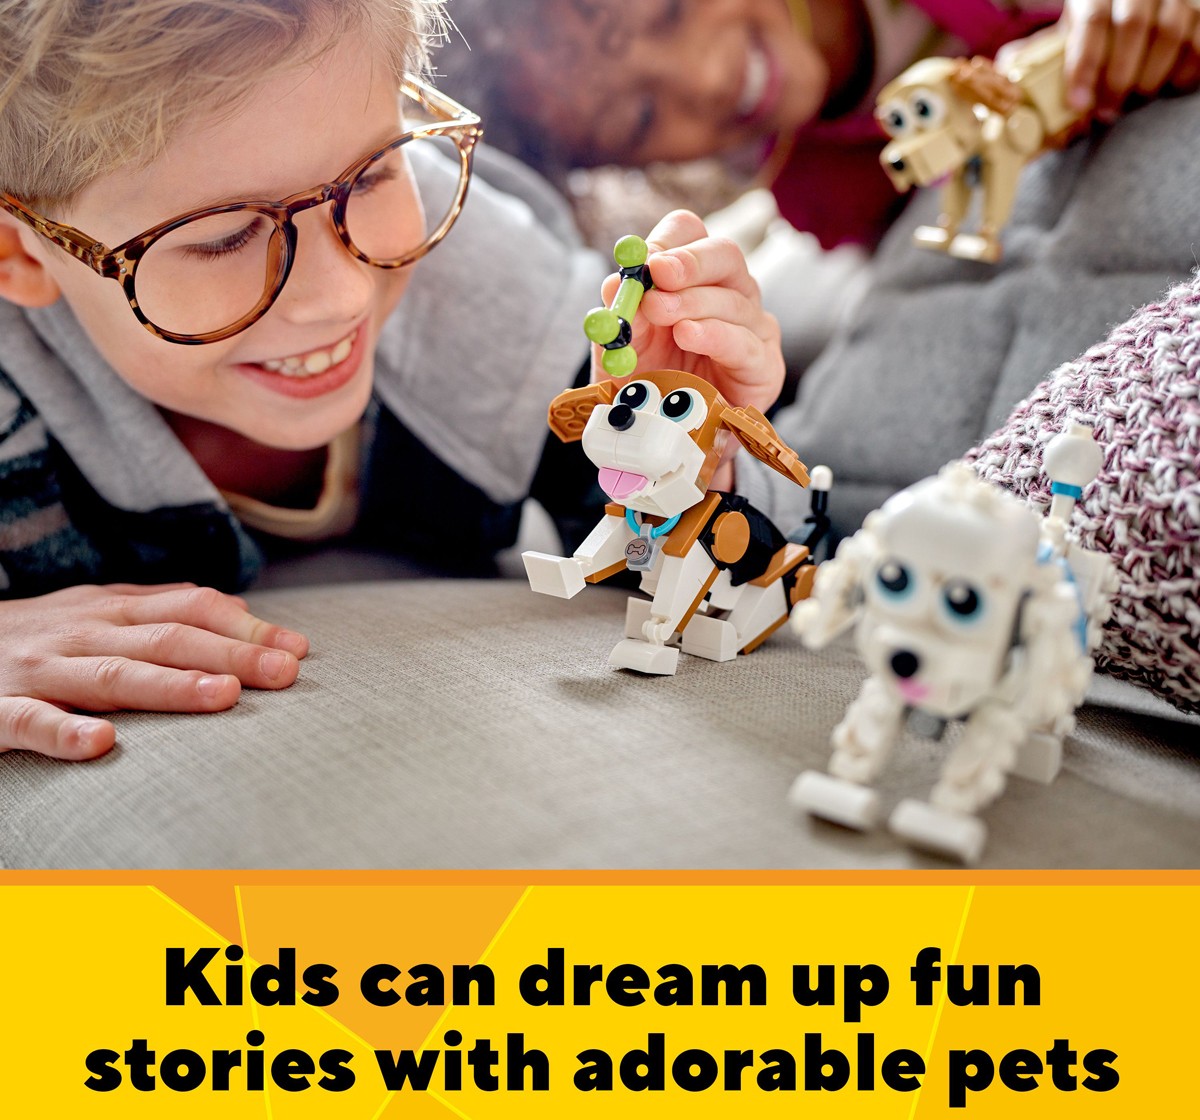 LEGO Creator Adorable Dogs 31137 Building Toy Set 475 Pieces Multicolour 7Y+